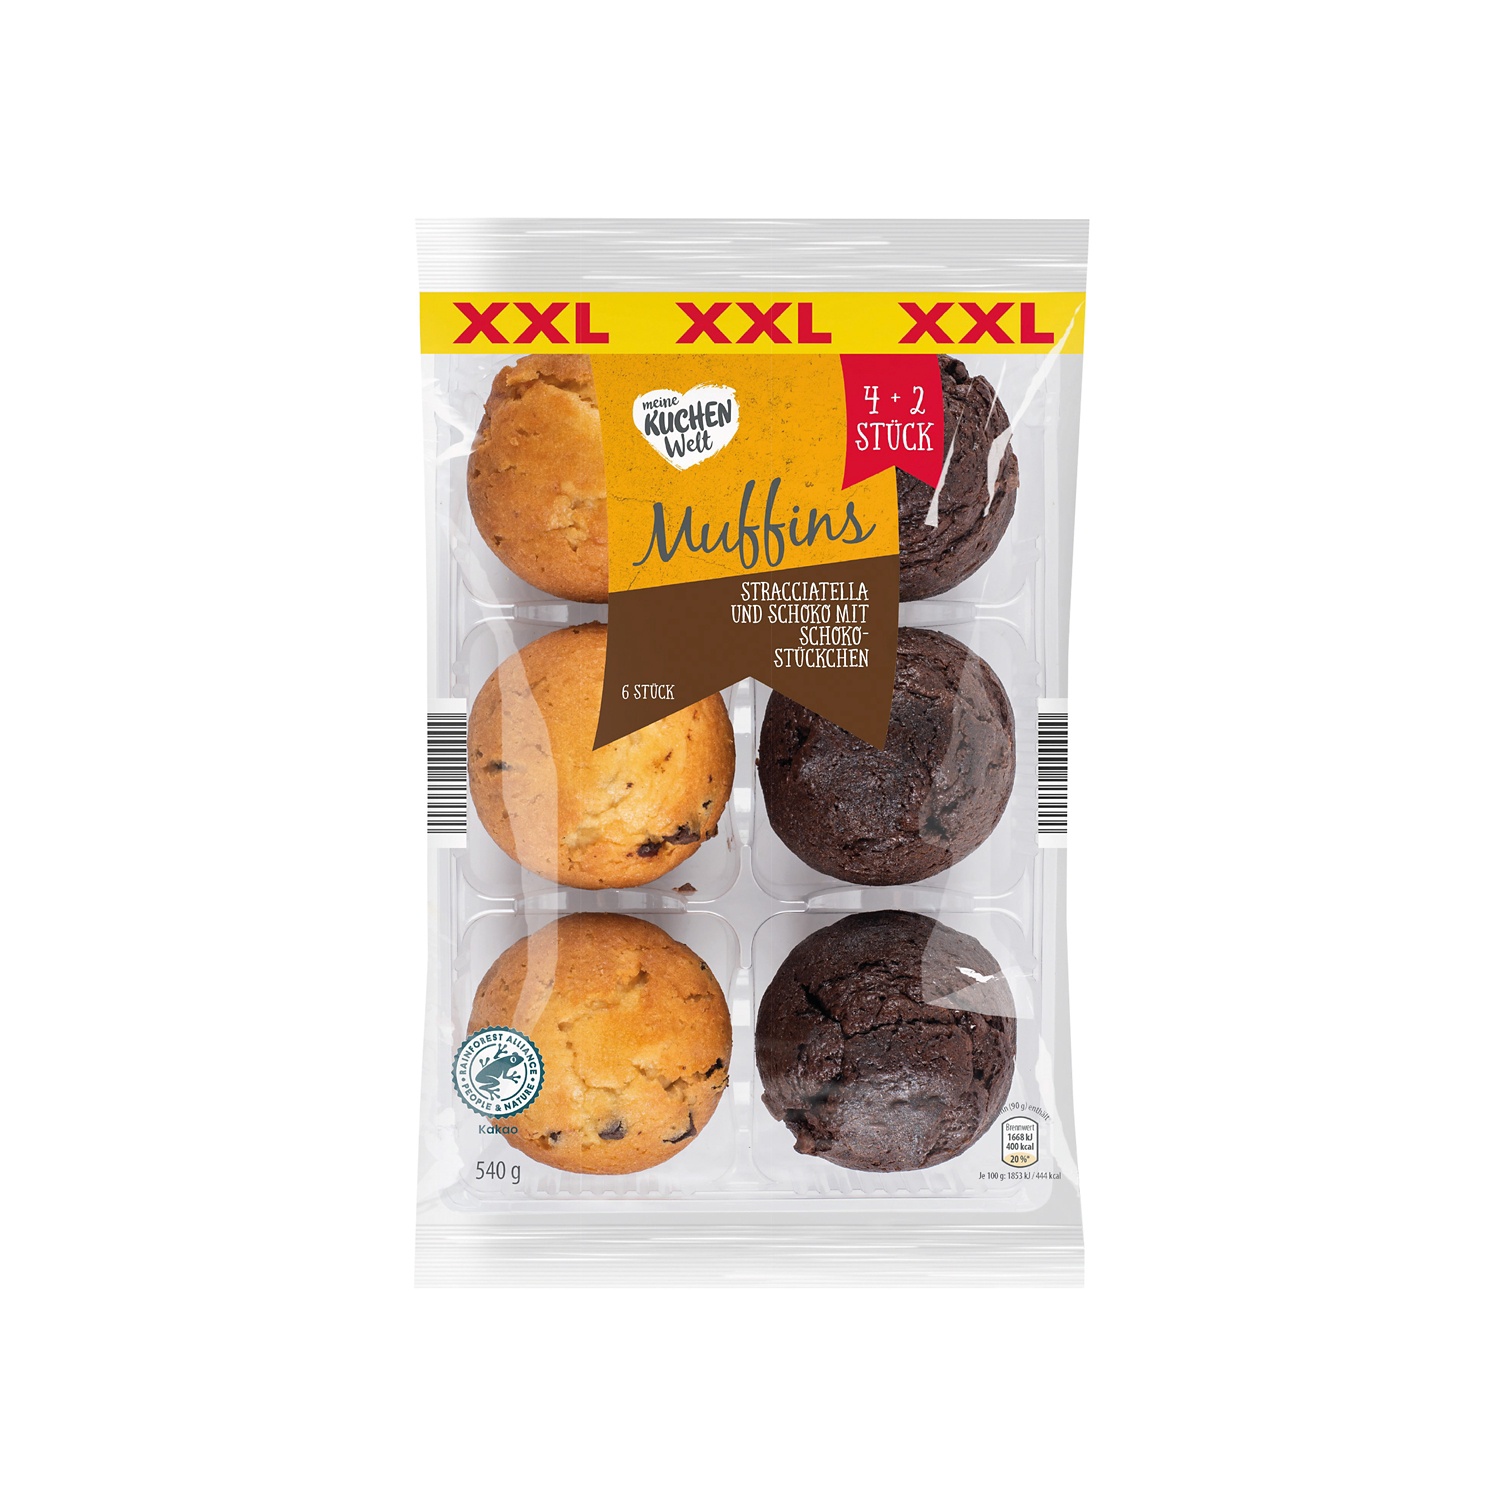 MEINE KUCHENWELT Muffins XXL, Stracciatella & Schoko